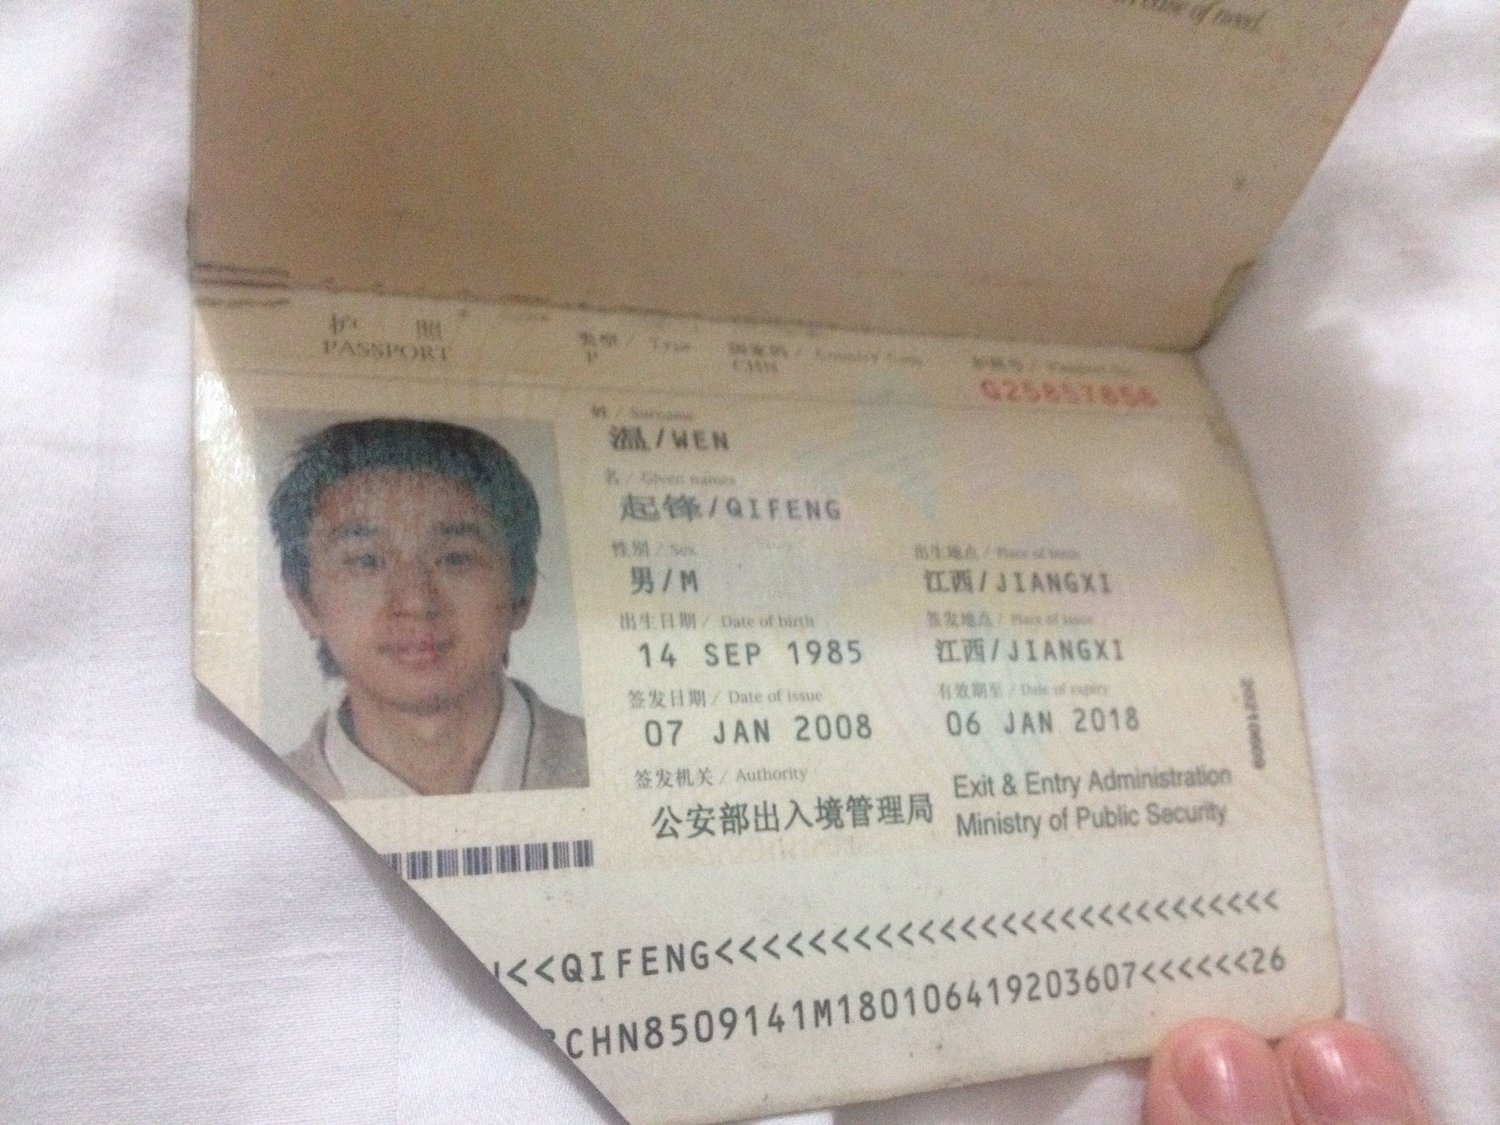  這是公民力量、中國民主黨溫起鋒被毀掉的護照。我在網上搜「被毀護照」時，找到了這個。他的文章發表在： https://blog.boxun.com/hero/201601/mark/12_1.shtml    